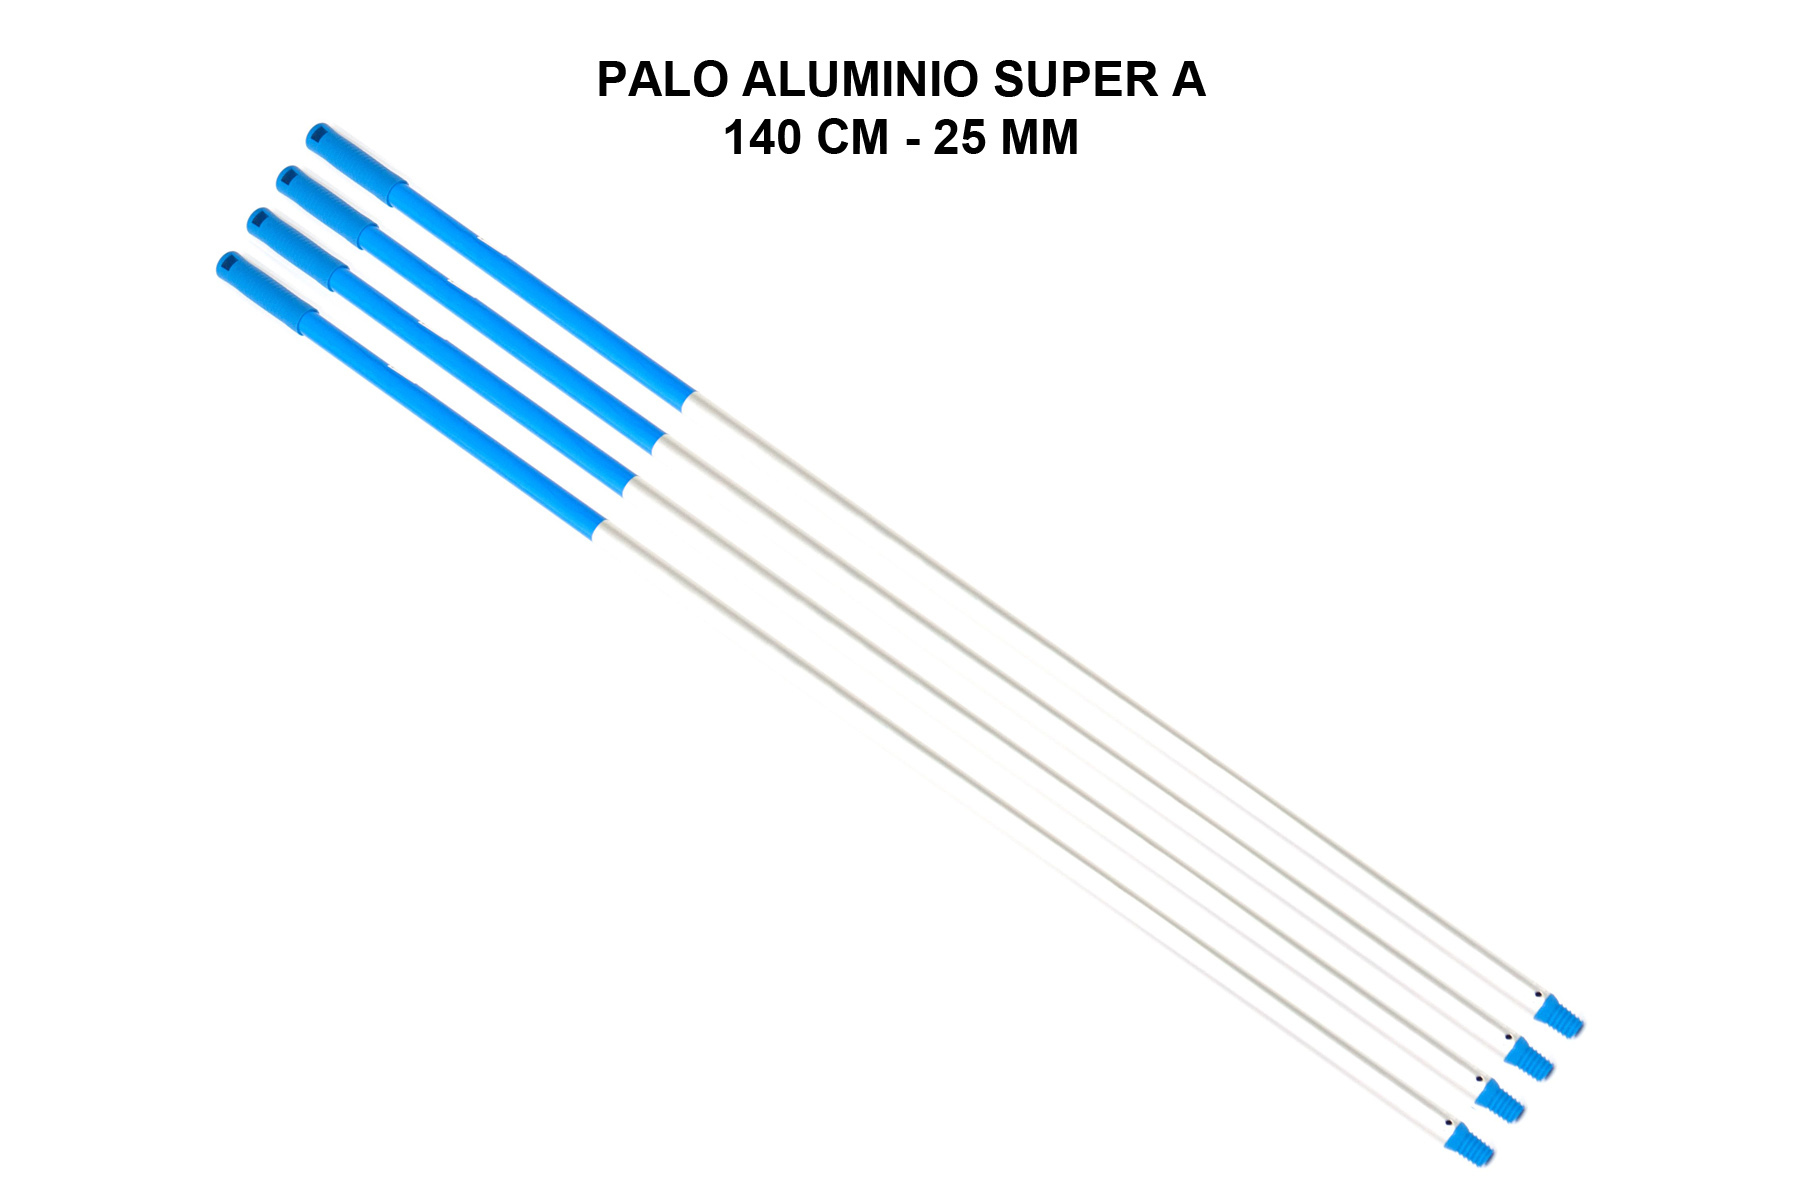 PALO ALUMINIO SUPER A 140 CM - 25 MM